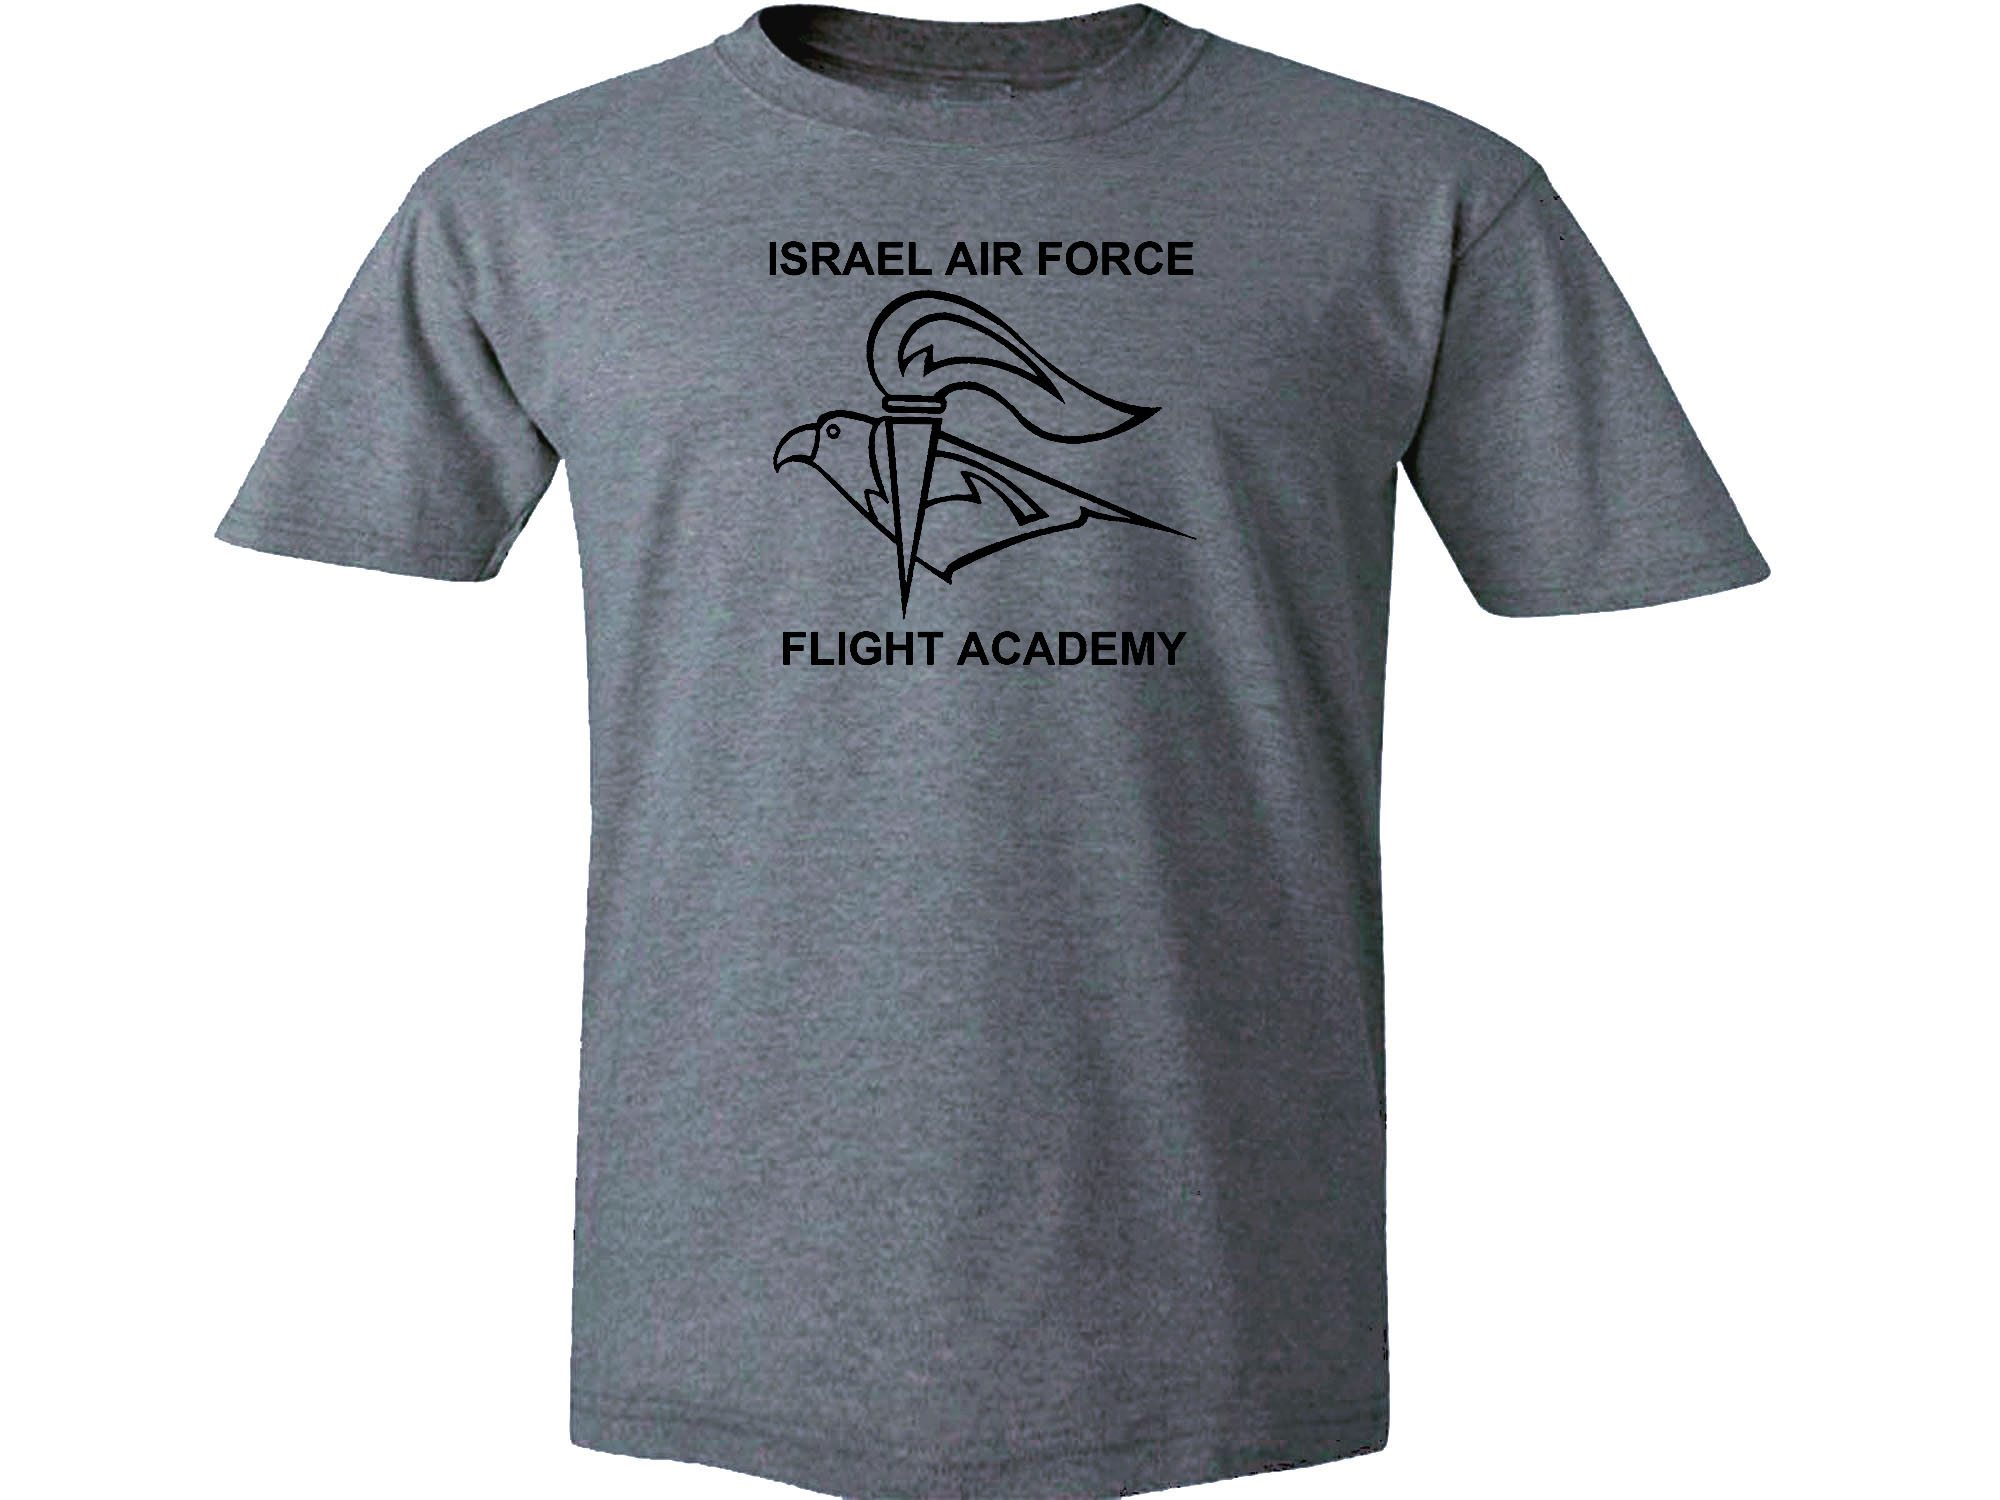 IAF Flight Academy IDF Israel Army gray t-shirt